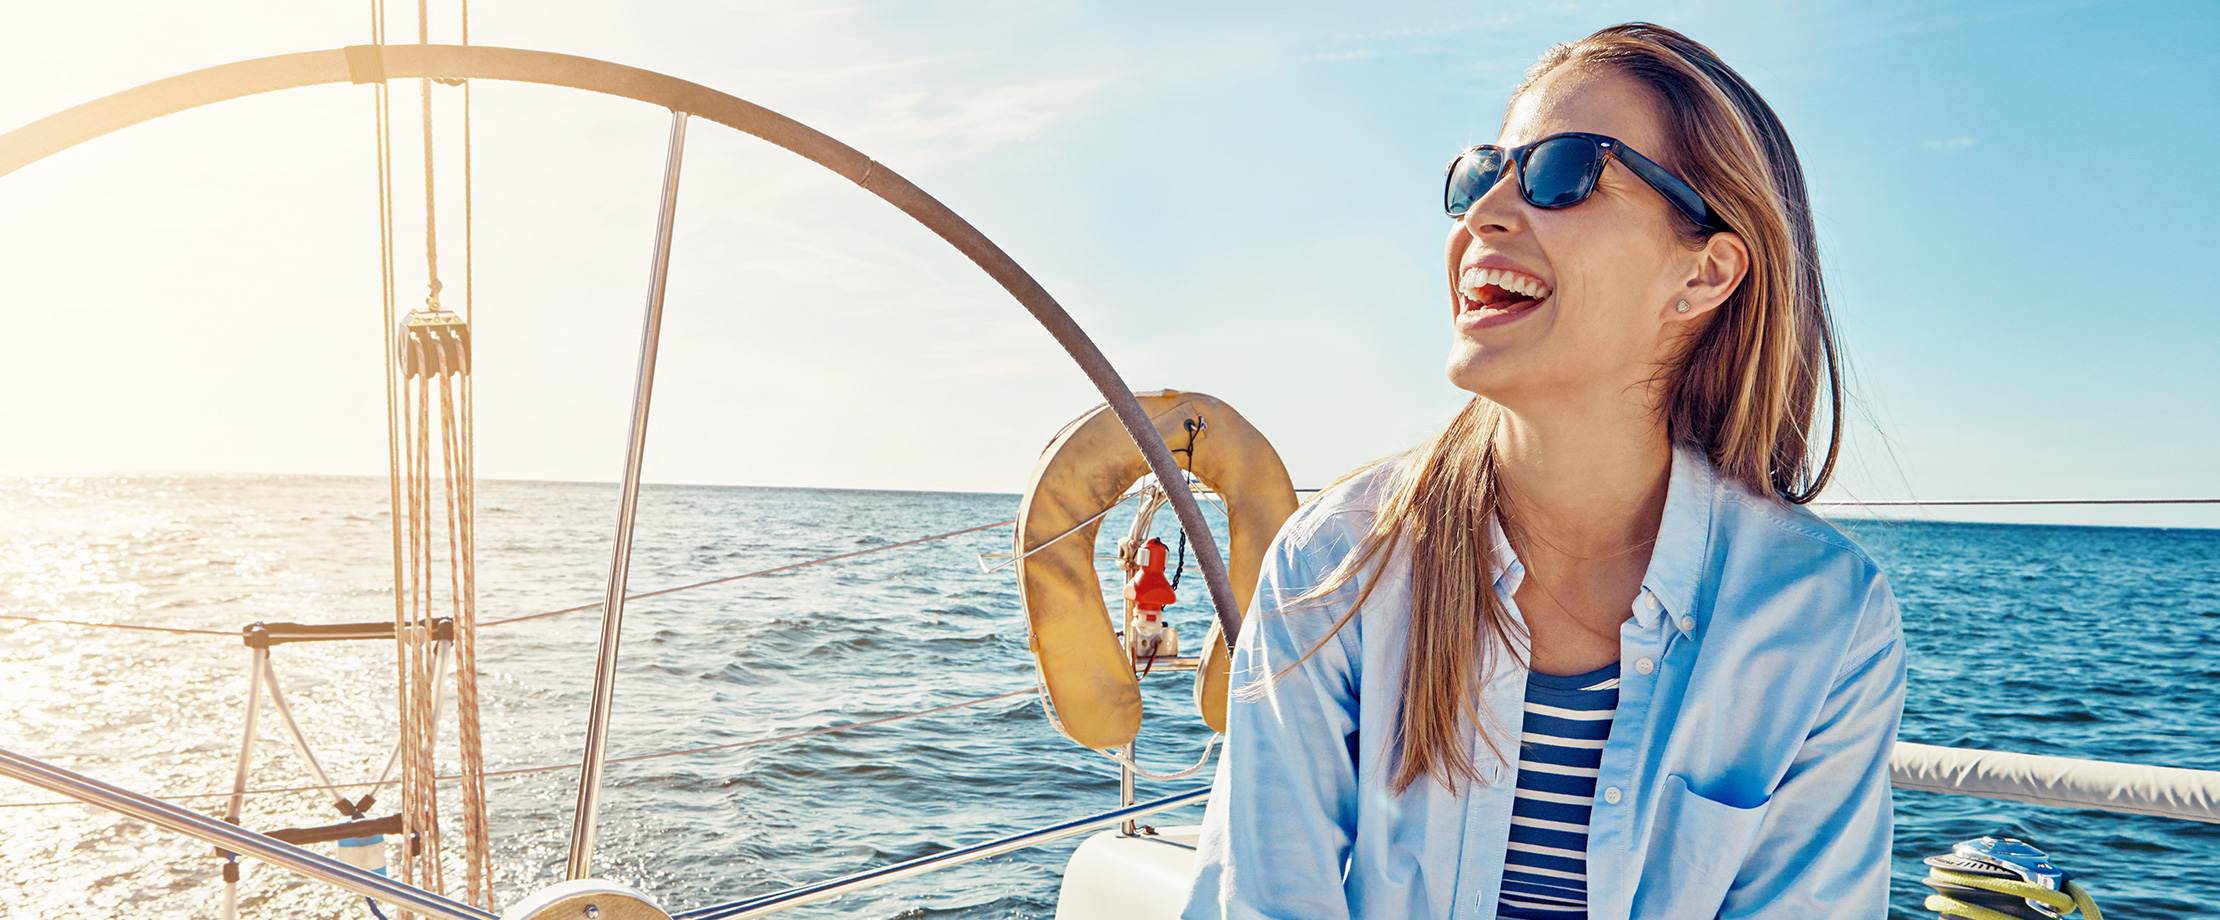 Eine blonde Frau sitzt auf einem Segelboot und schaut lachend in den Himmel.